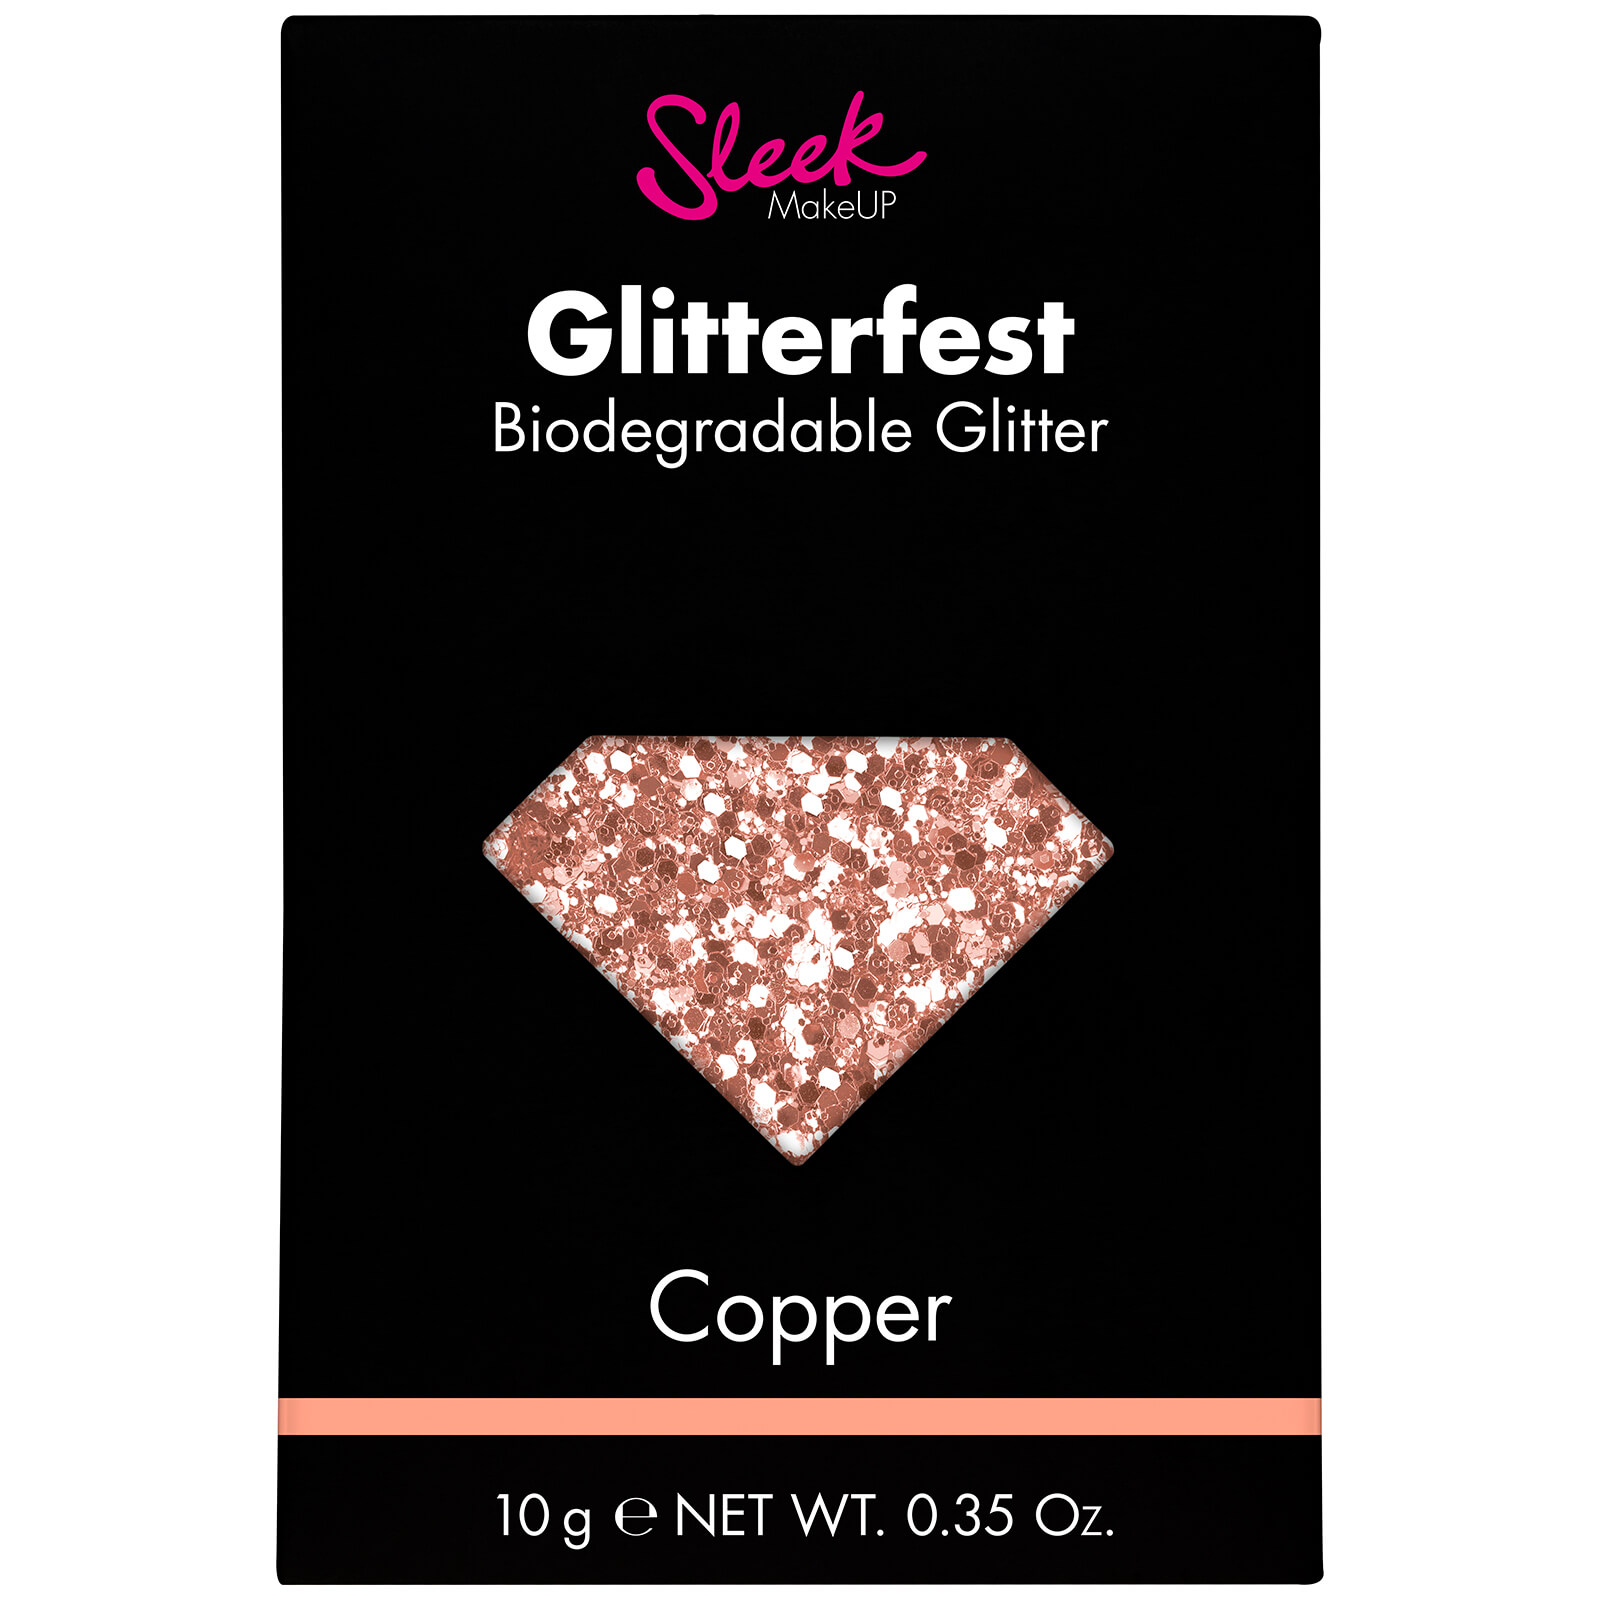 Brillantina biodegradable Glitterfest de Sleek MakeUP - Cobre 10 g